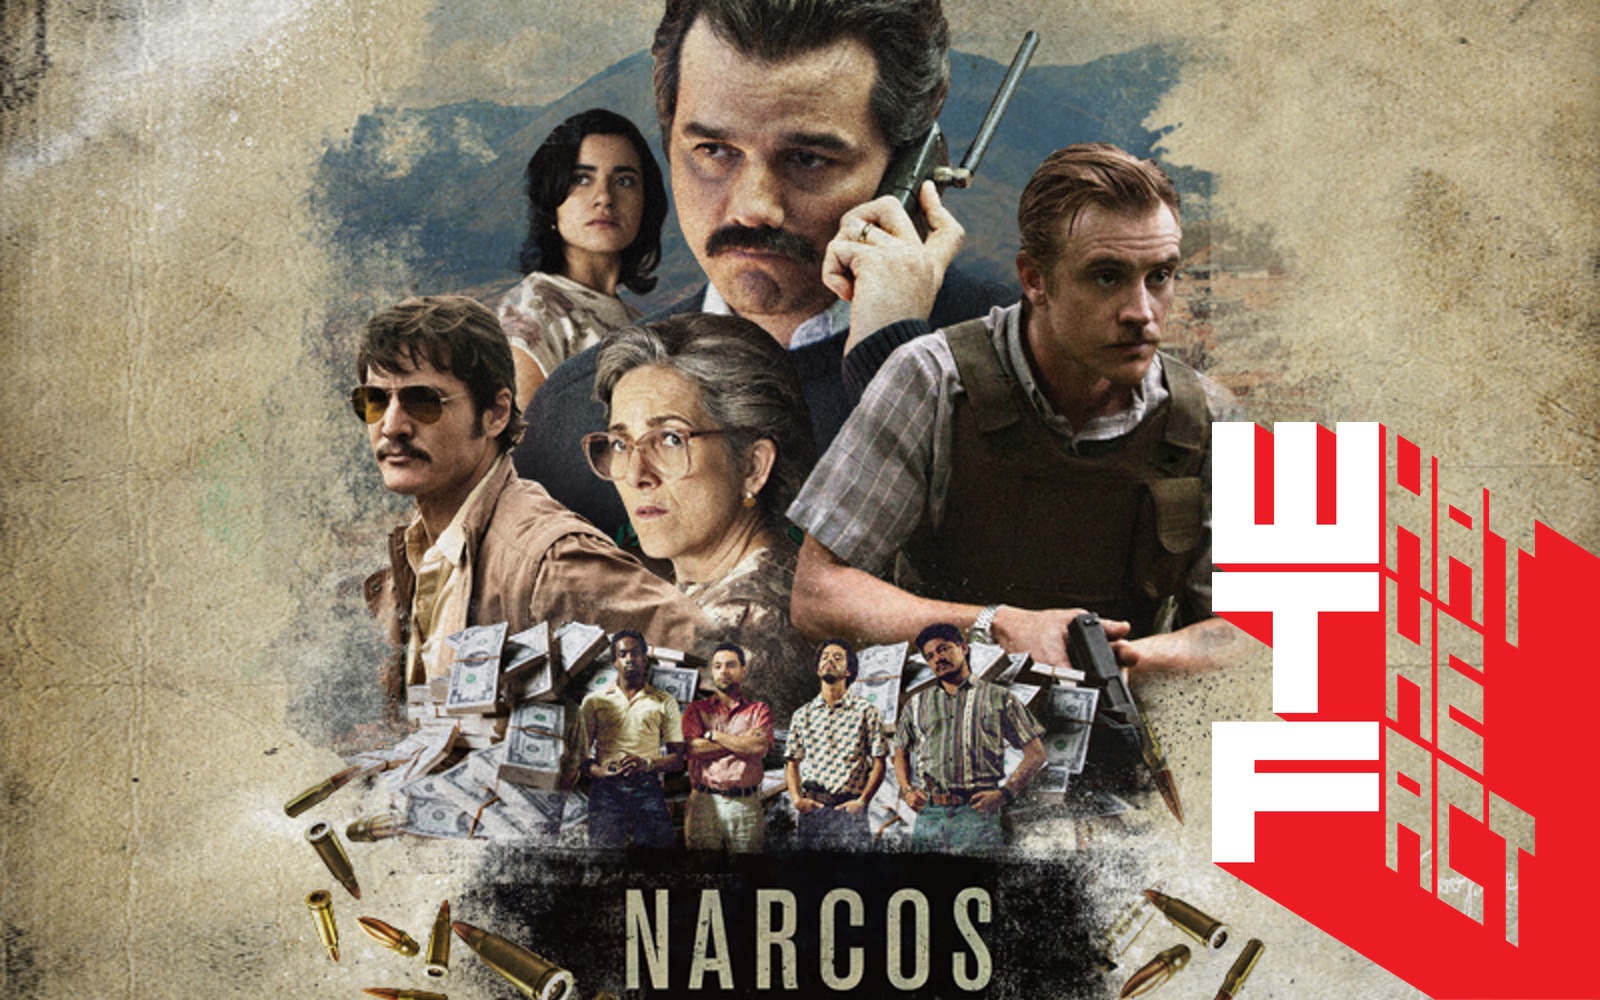 ฝ่าปฏิบัติการทลายวงจรยาเสพย์ติดใน Narcos (2015-) หมายหัวล่าราชันย์ยานรก